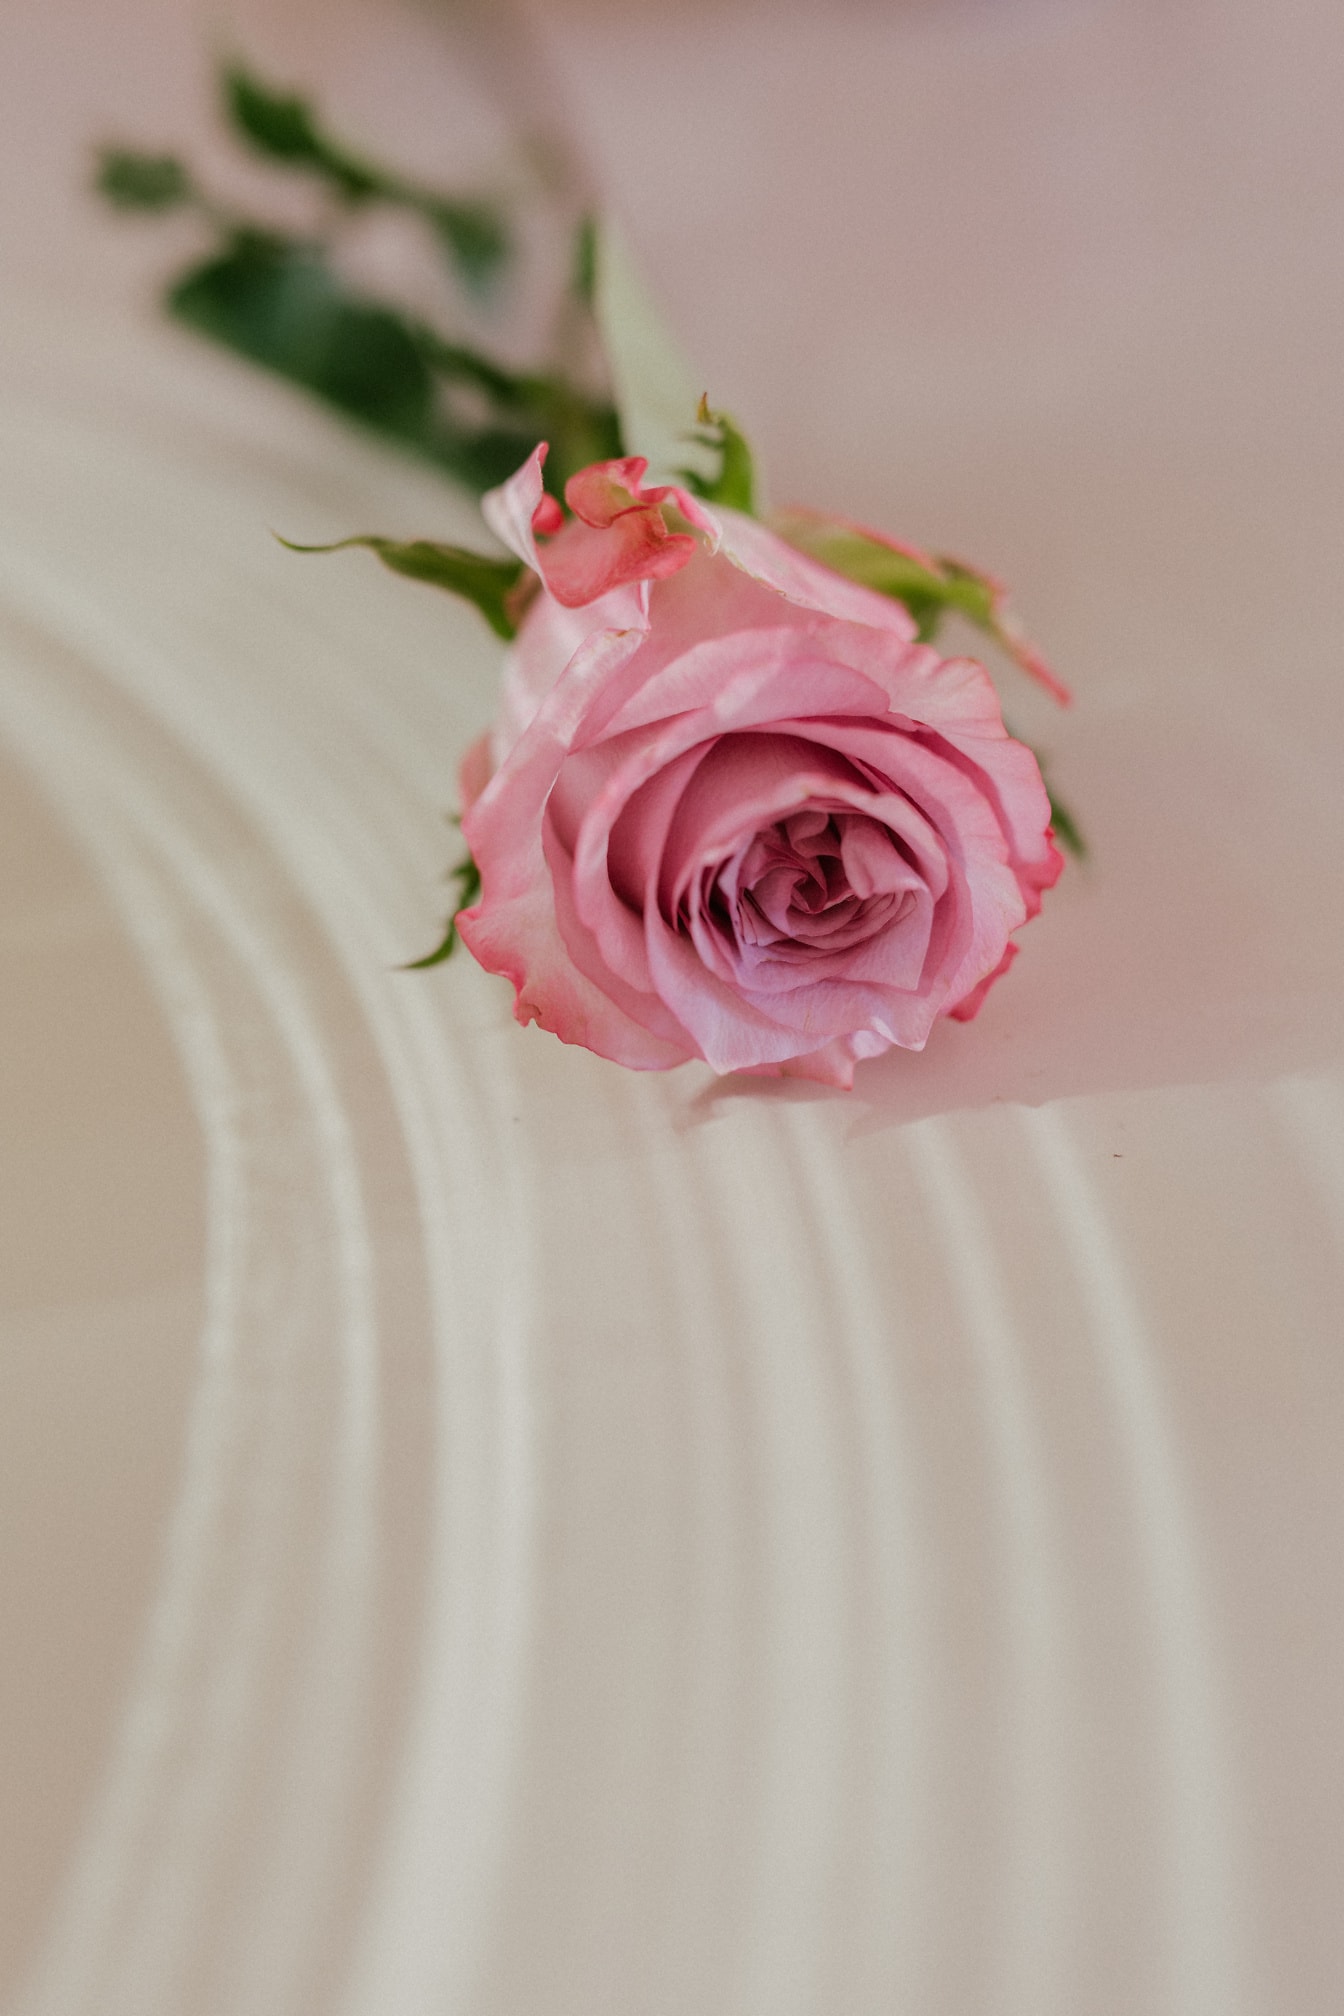 Ružovkastá ruža na bielej povrchovej detailnej fotografii